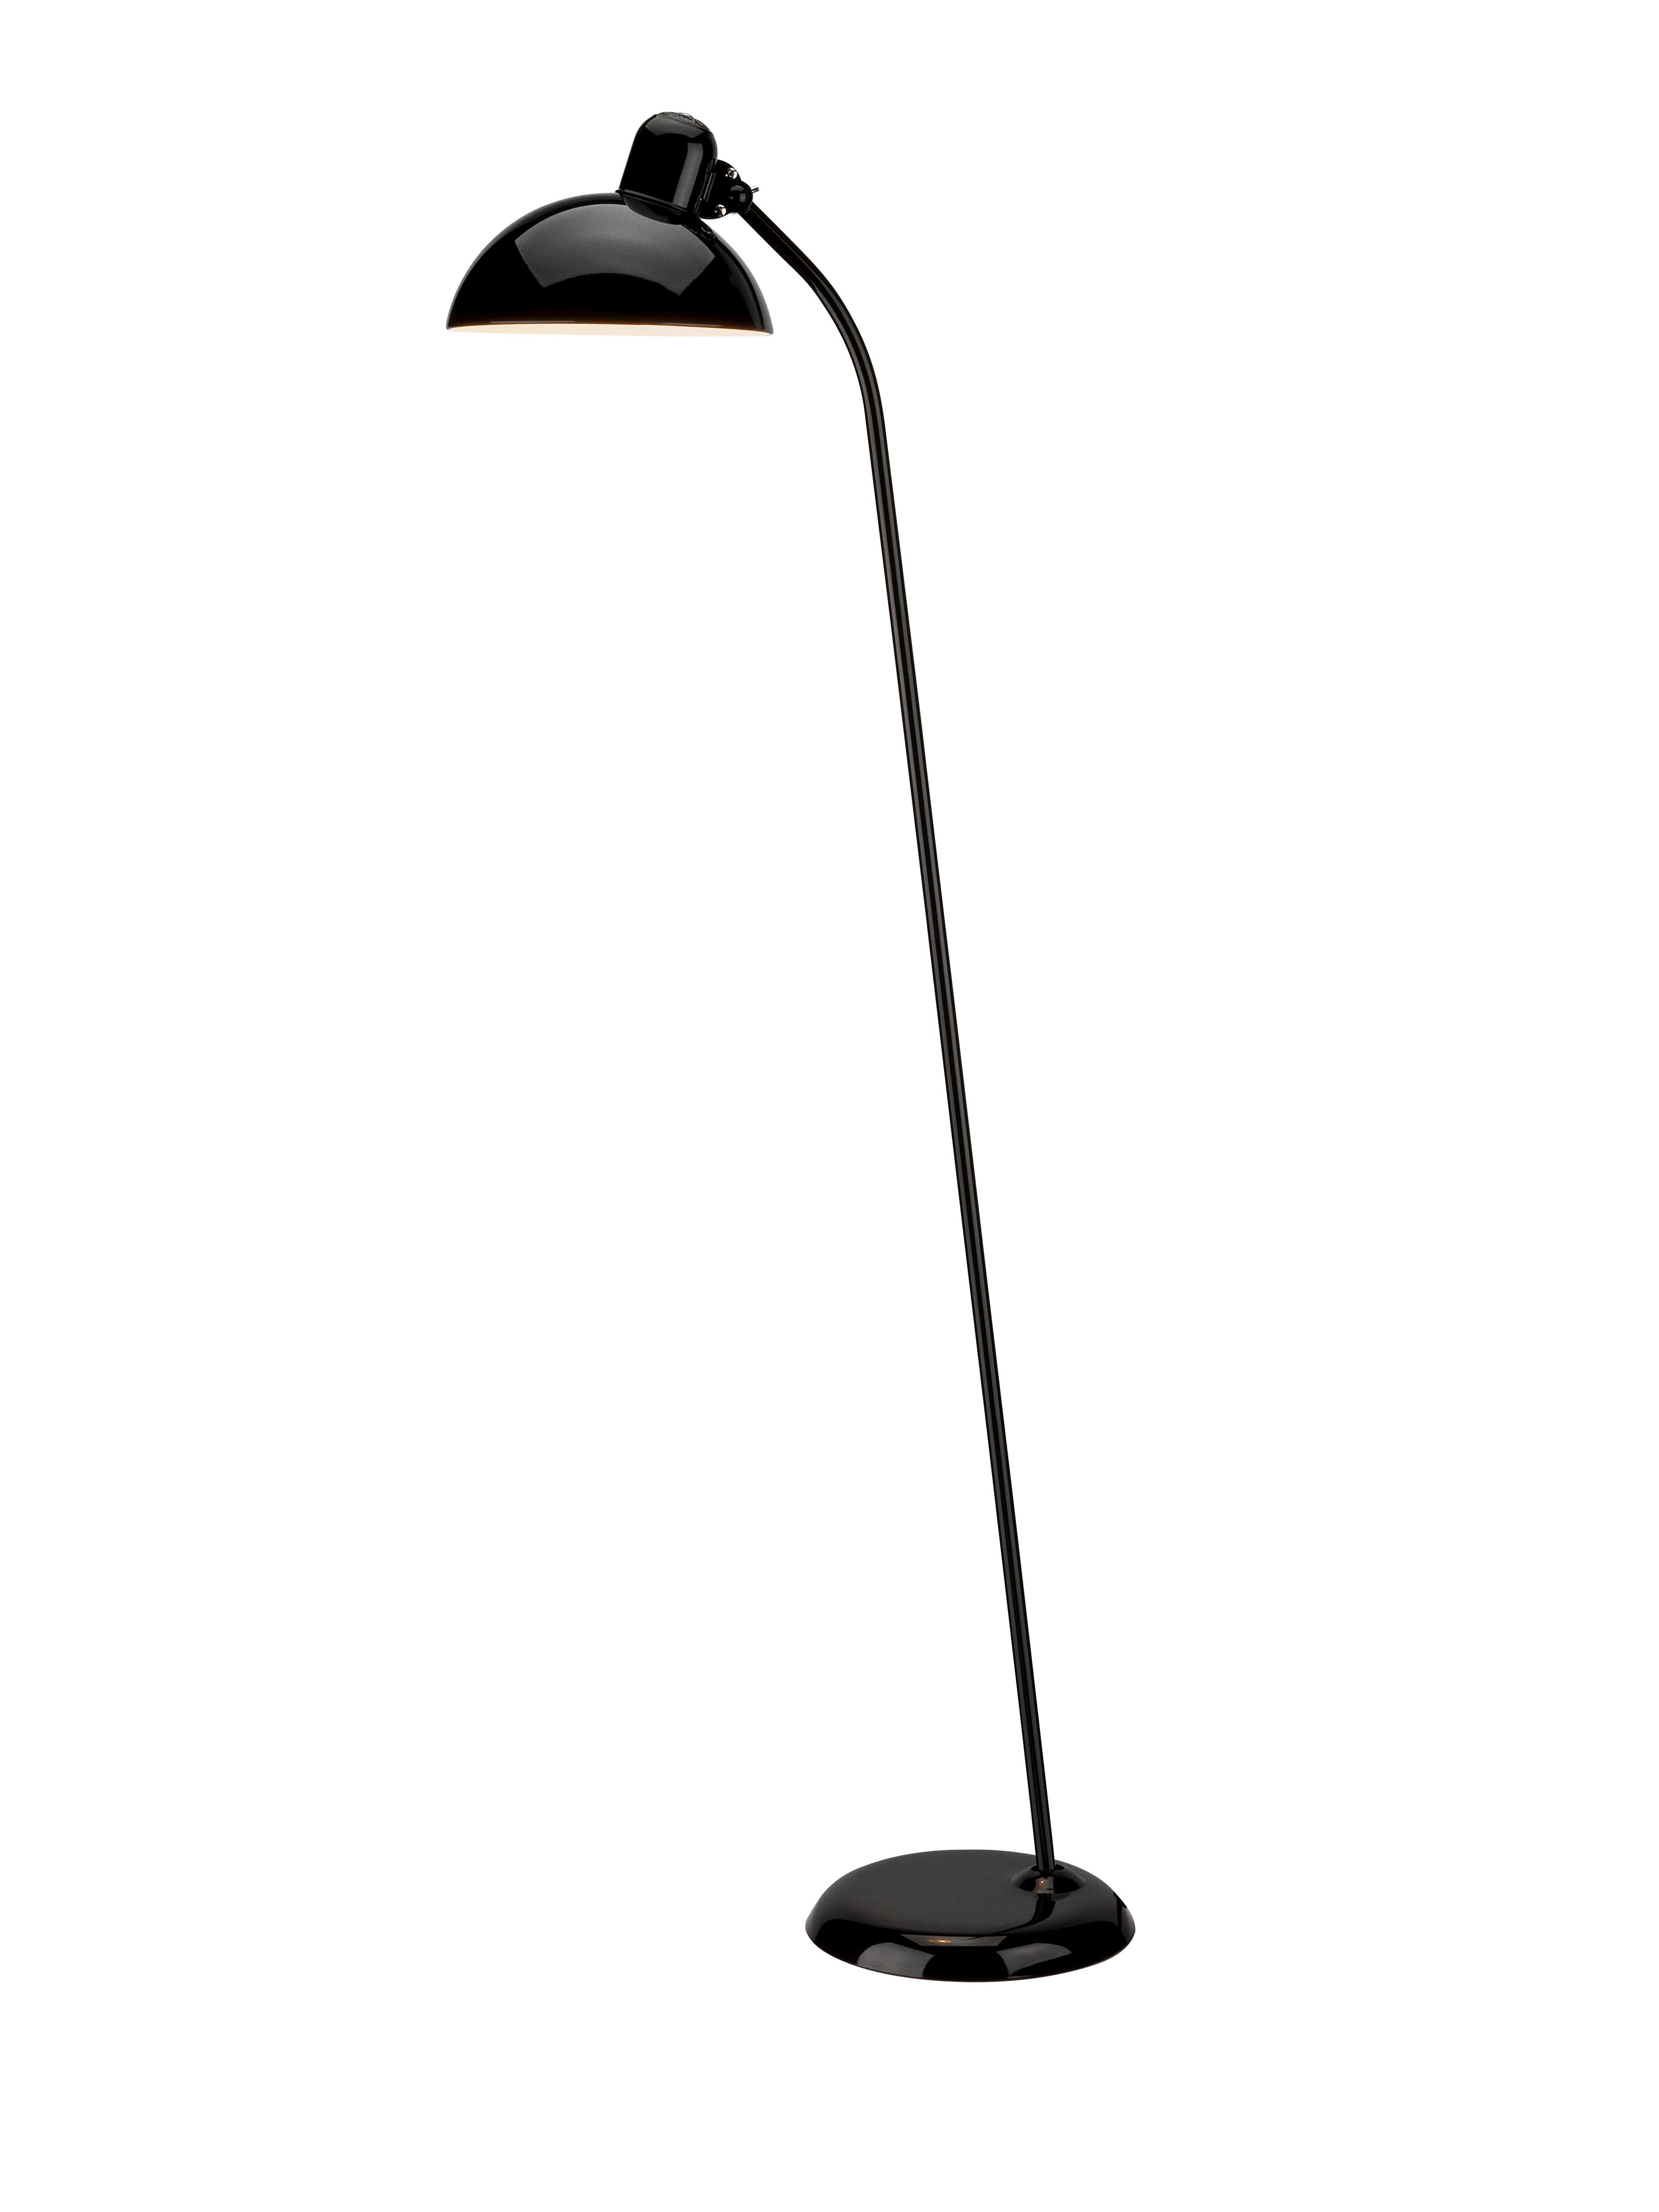 Metal Christian Dell 'Kaiser Idell 6556-F' Floor Lamp for Fritz Hansen in Gloss Black For Sale